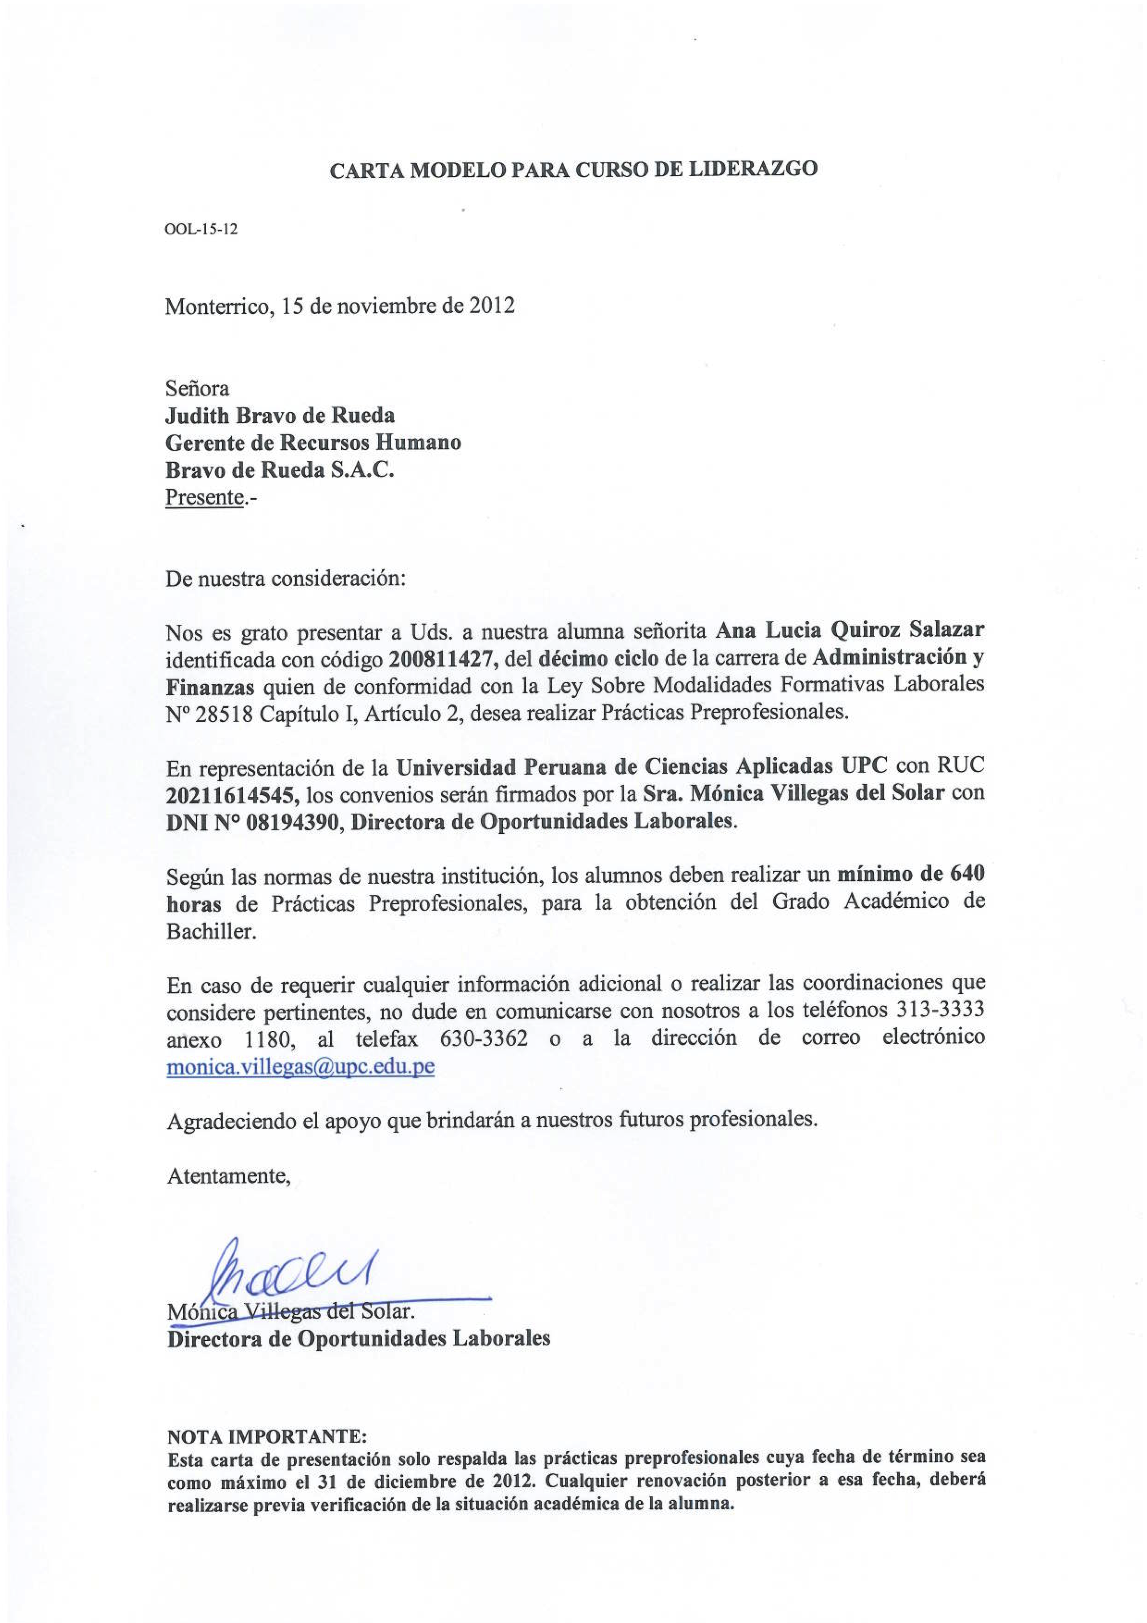 Carta de Presentación de la UPC  Ana Lucía Quiroz